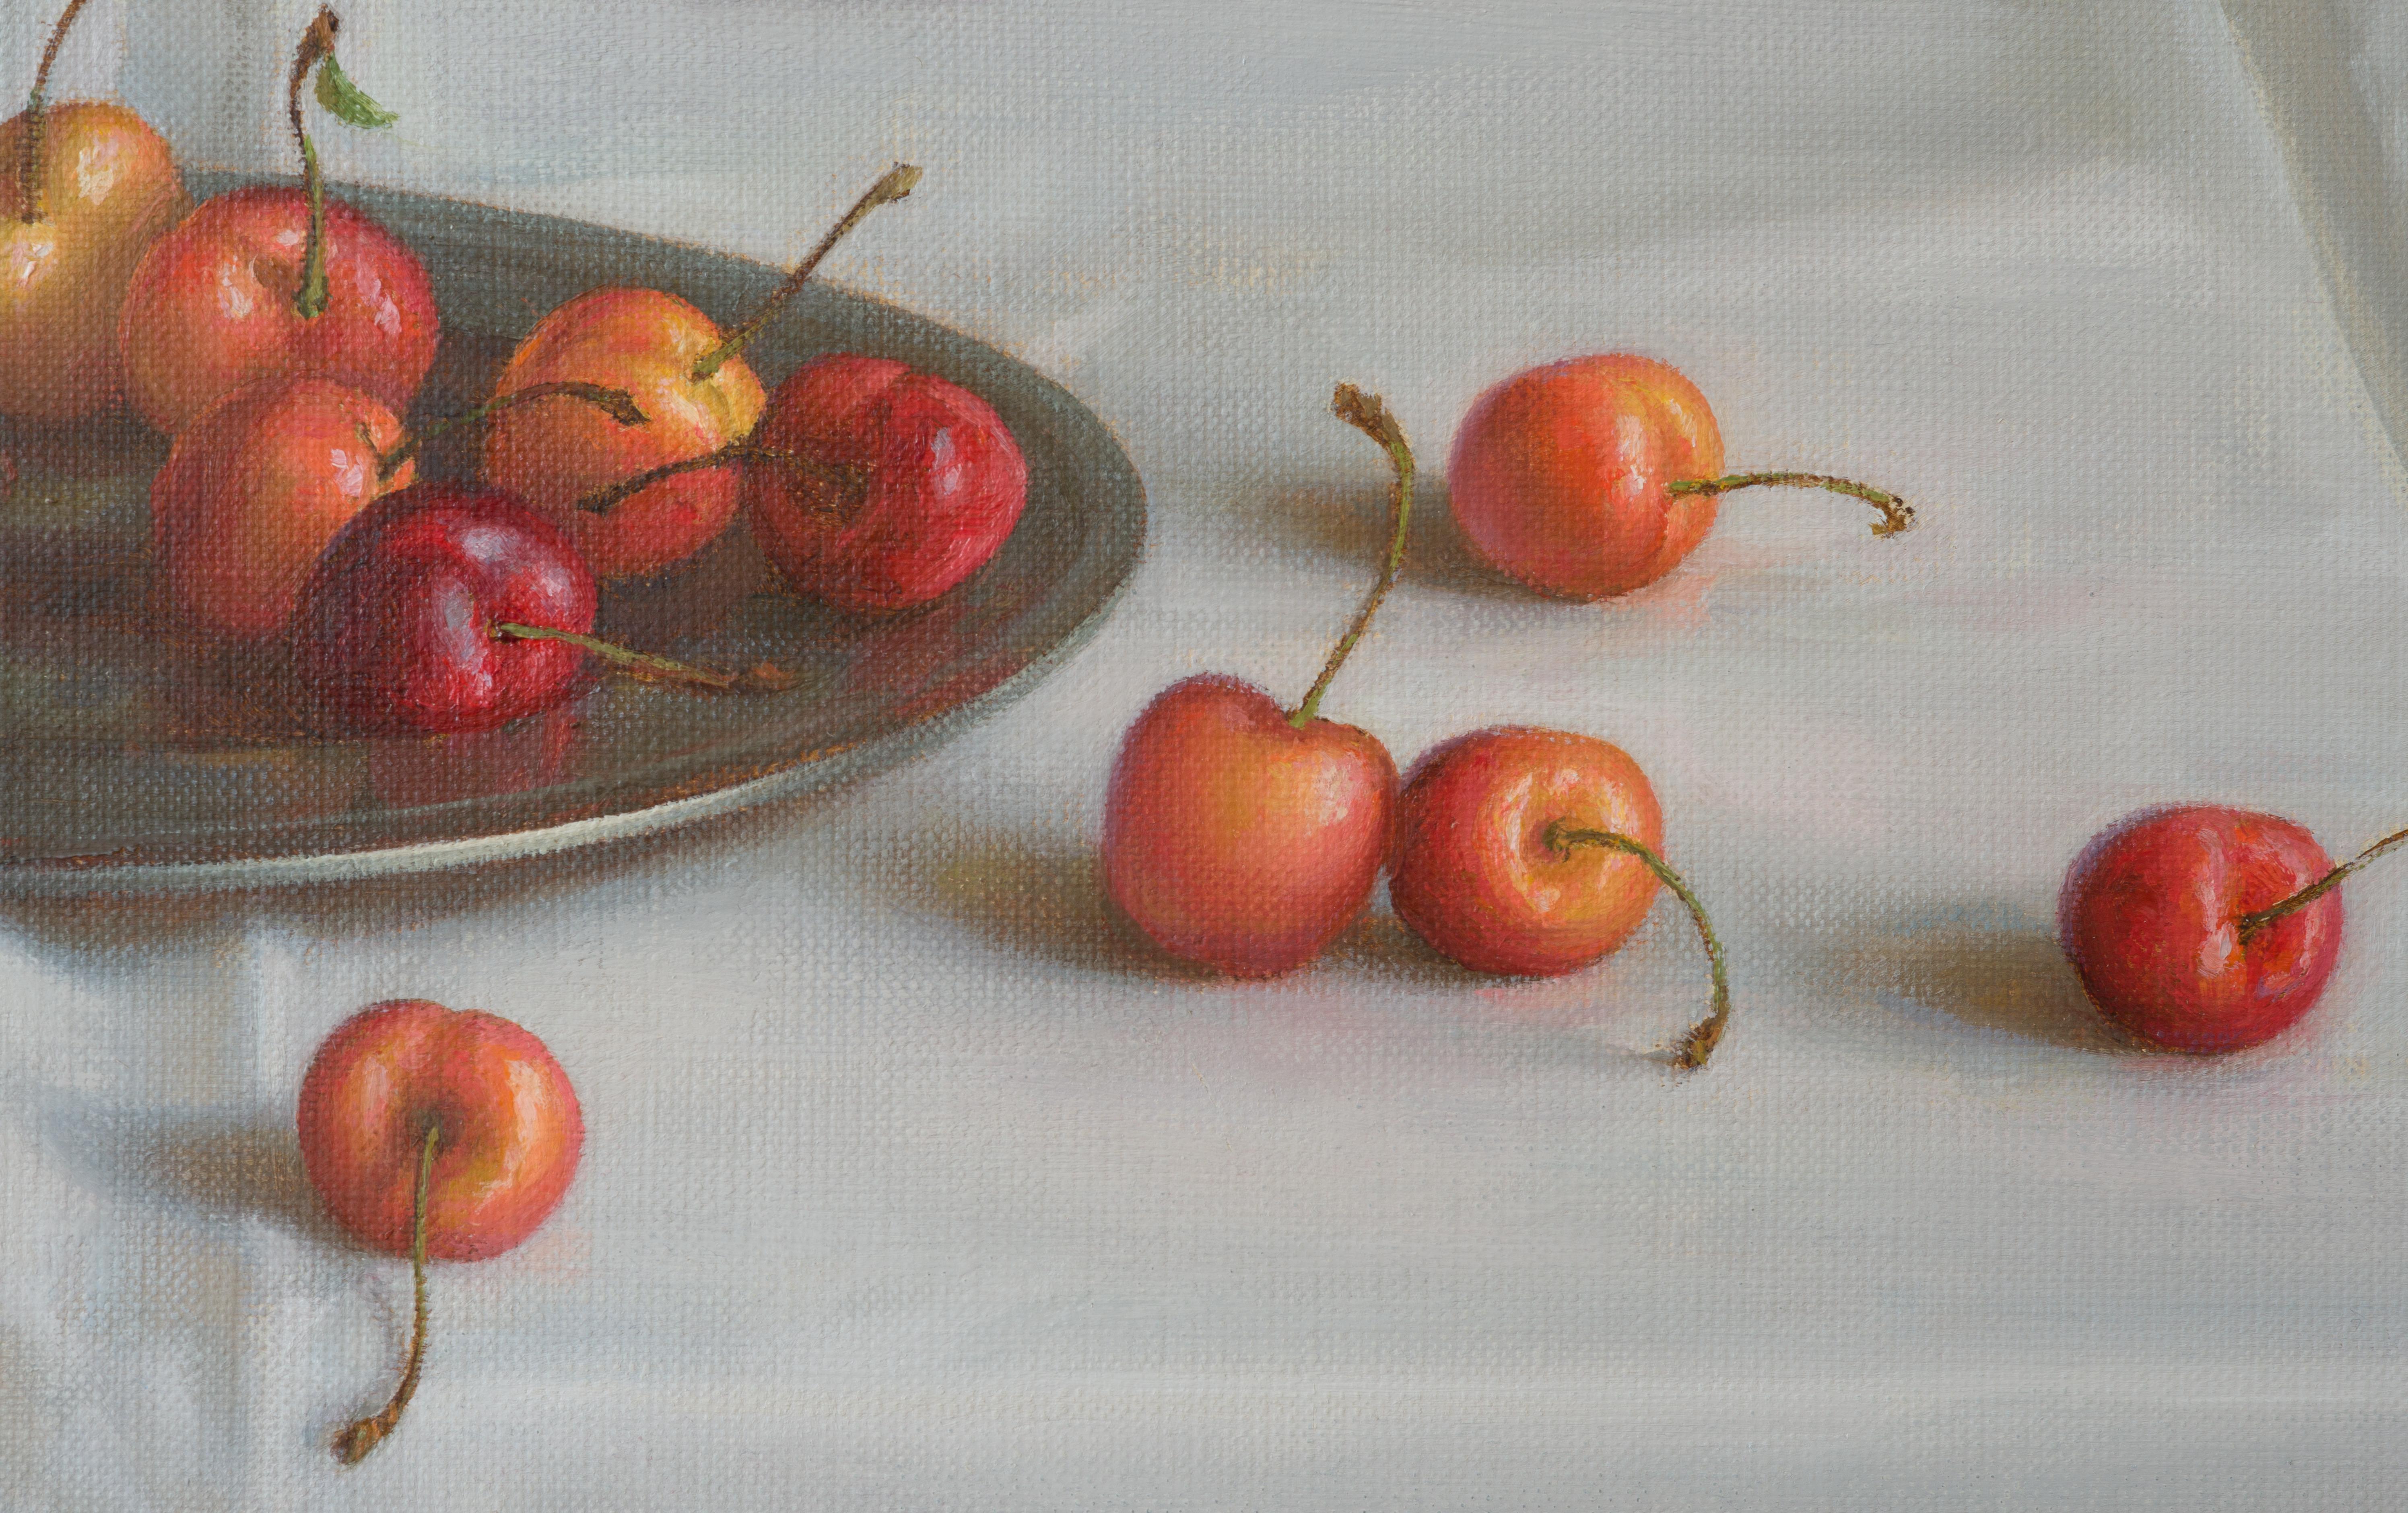 Cherry summer - Realist Painting by Irina Trushkova